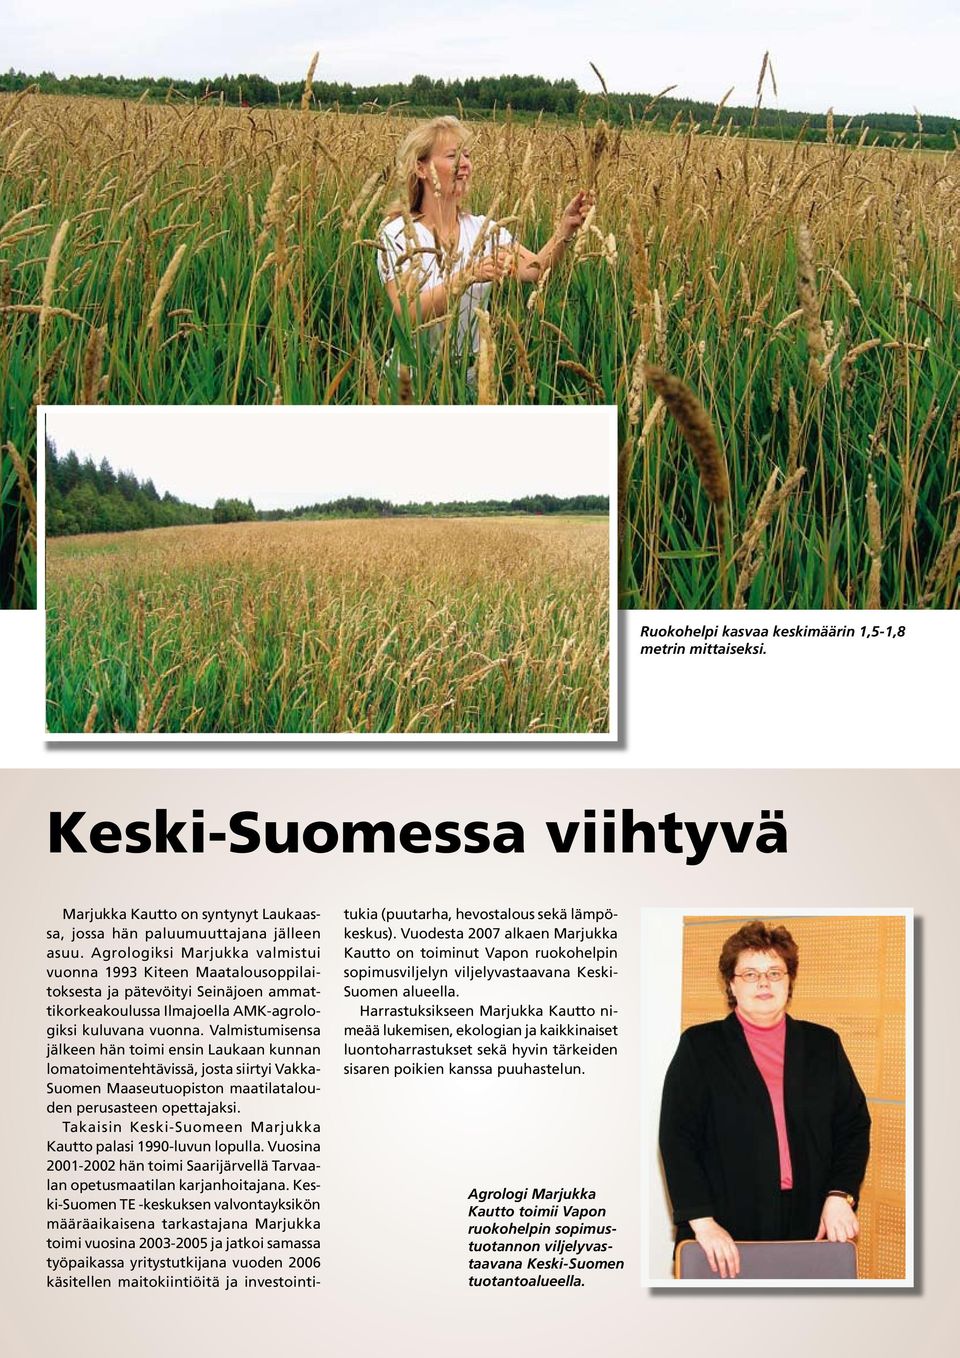 Valmistumisensa jälkeen hän toimi ensin Laukaan kunnan lomatoimentehtävissä, josta siirtyi Vakka- Suomen Maaseutuopiston maatilatalouden perusasteen opettajaksi.